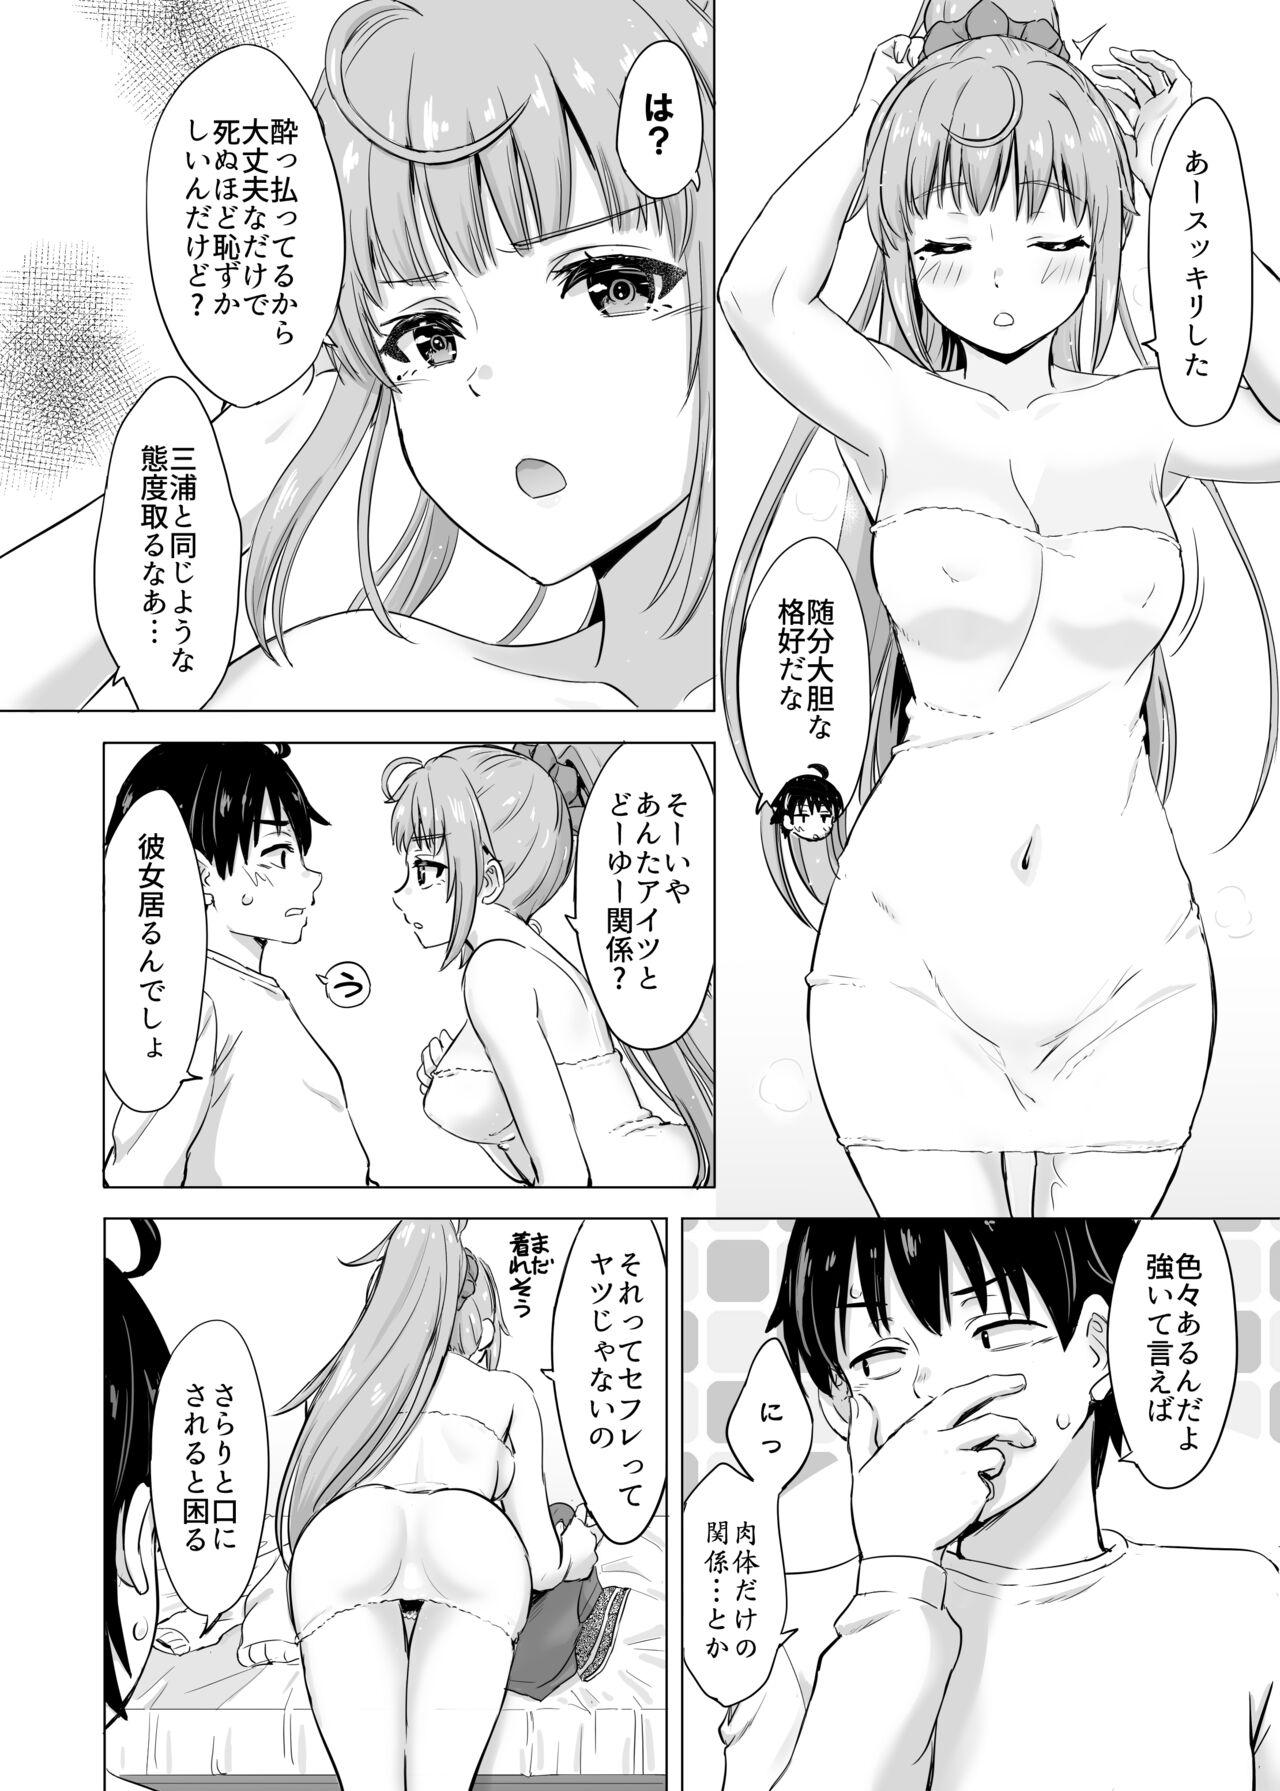 3way あーしさんサキサキ漫画 - Yahari ore no seishun love come wa machigatteiru Dad - Page 7